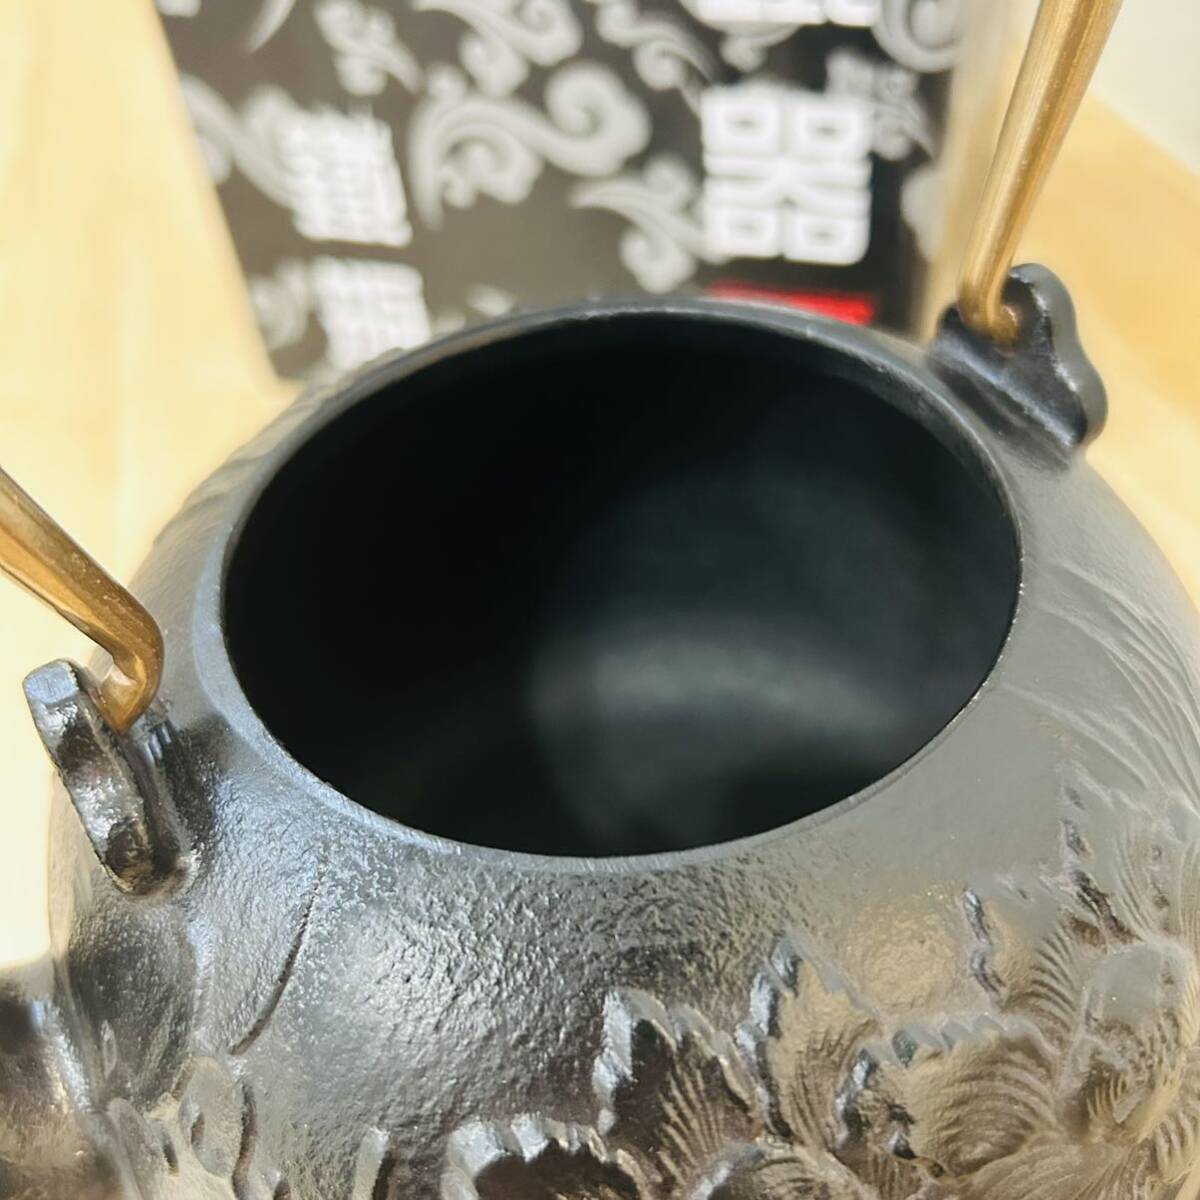  супер высокое качество песок металлический ...1.2L литье металлический чайник юг часть металлический контейнер заварной чайник чайная посуда . чайная посуда ...11×18×23cm 1.8kg калибр 8cm